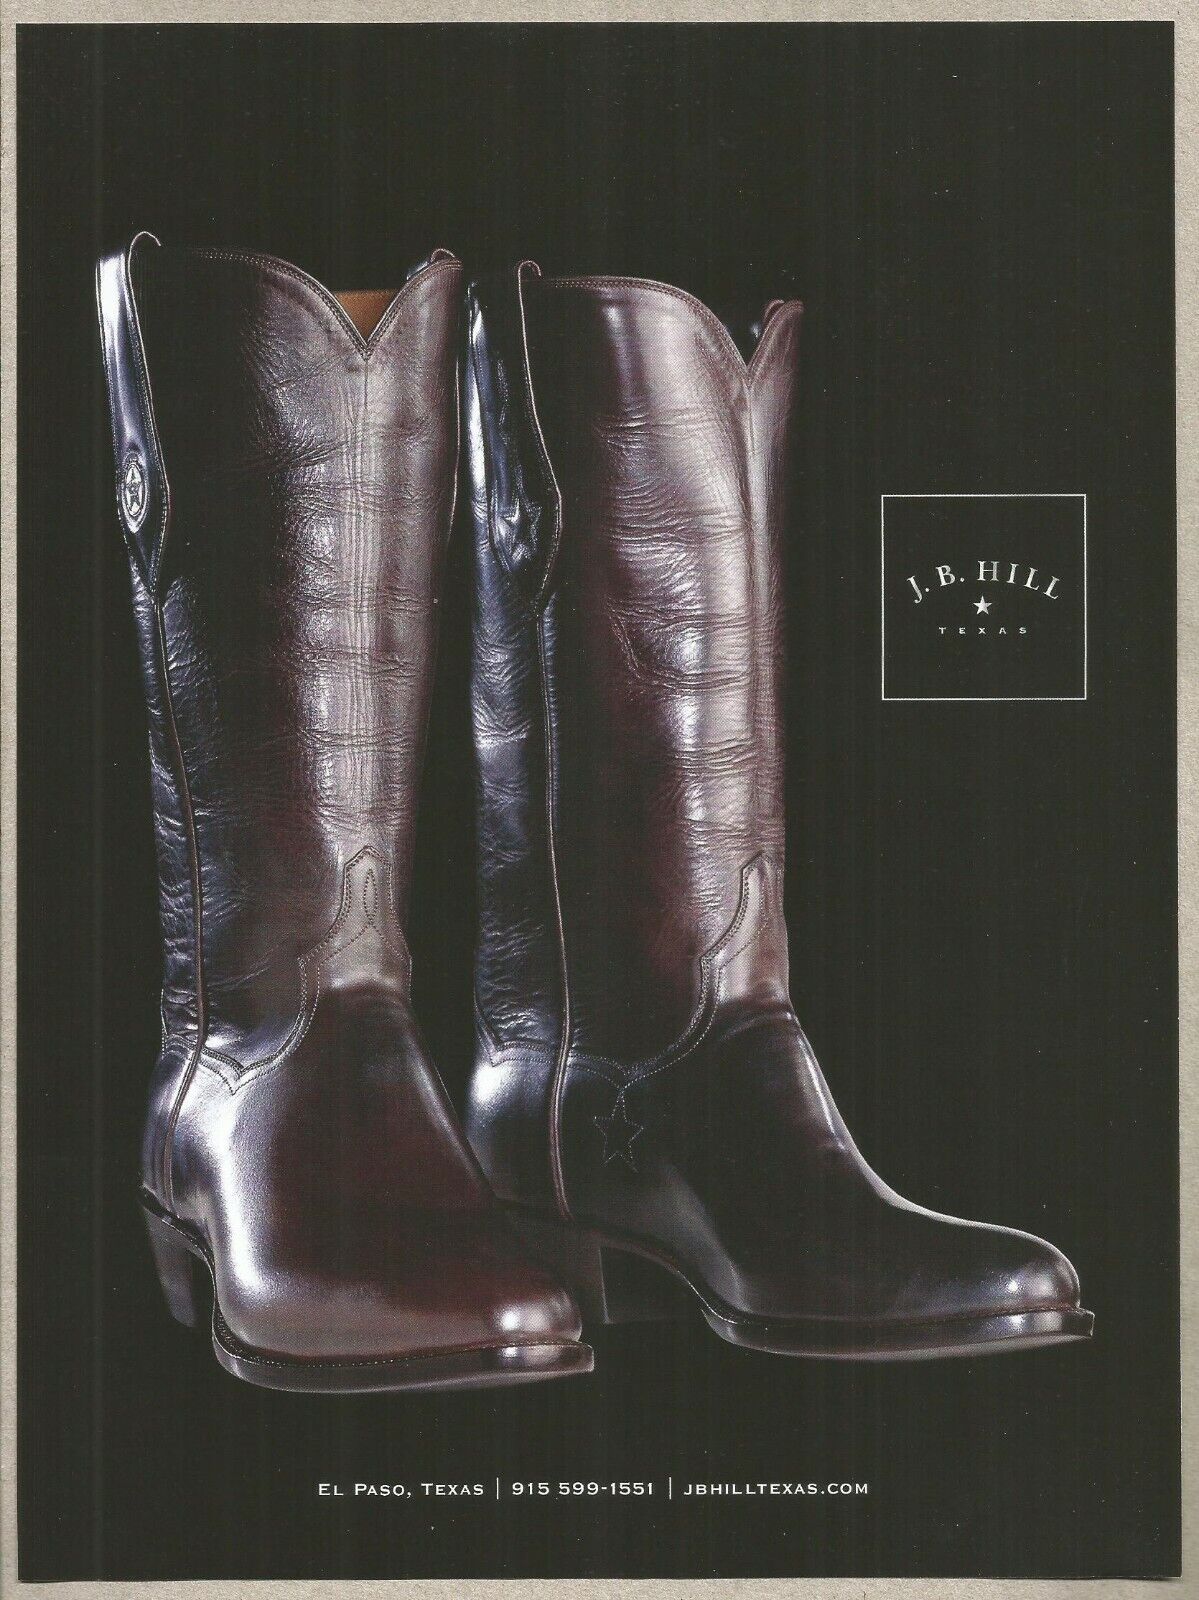 J.B.HILL Boots . El Paso,Texas - 2013  Print Ad